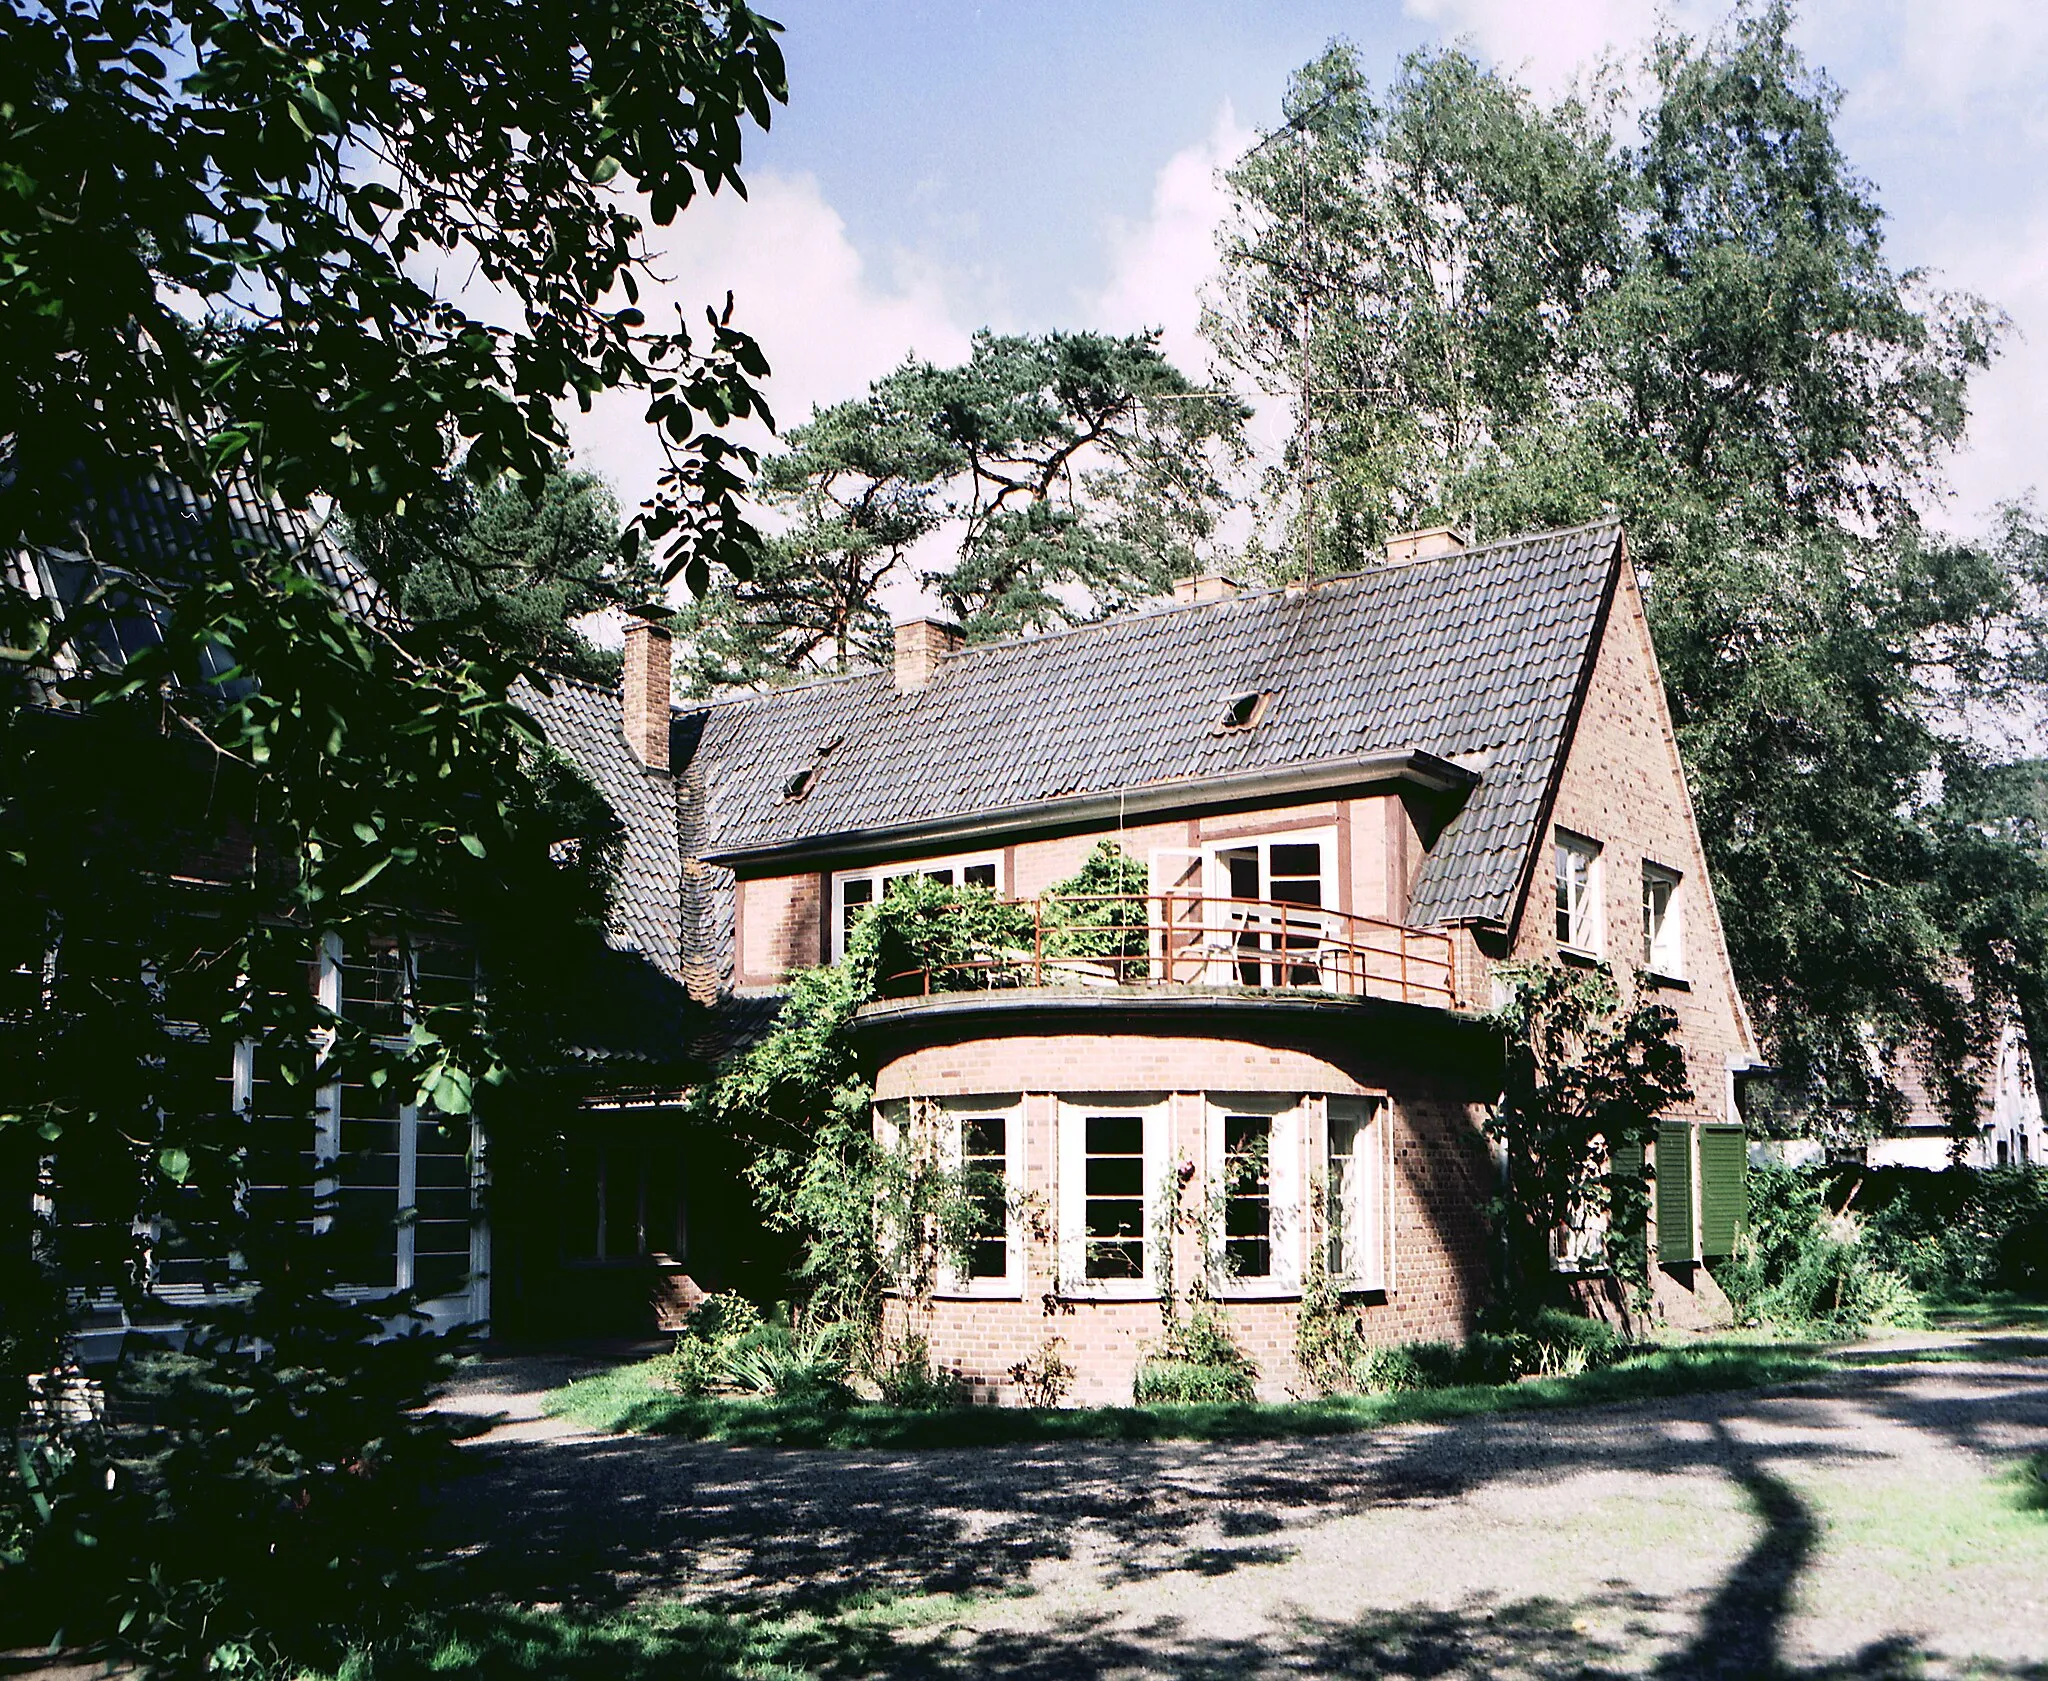 Photo showing: 15.09.1987   2600   Güstrow: Atelierhaus von Ernst Barlach, Heidberg 15
[R19870914B08.jpg]19870915010NR.JPG(c)Blobelt